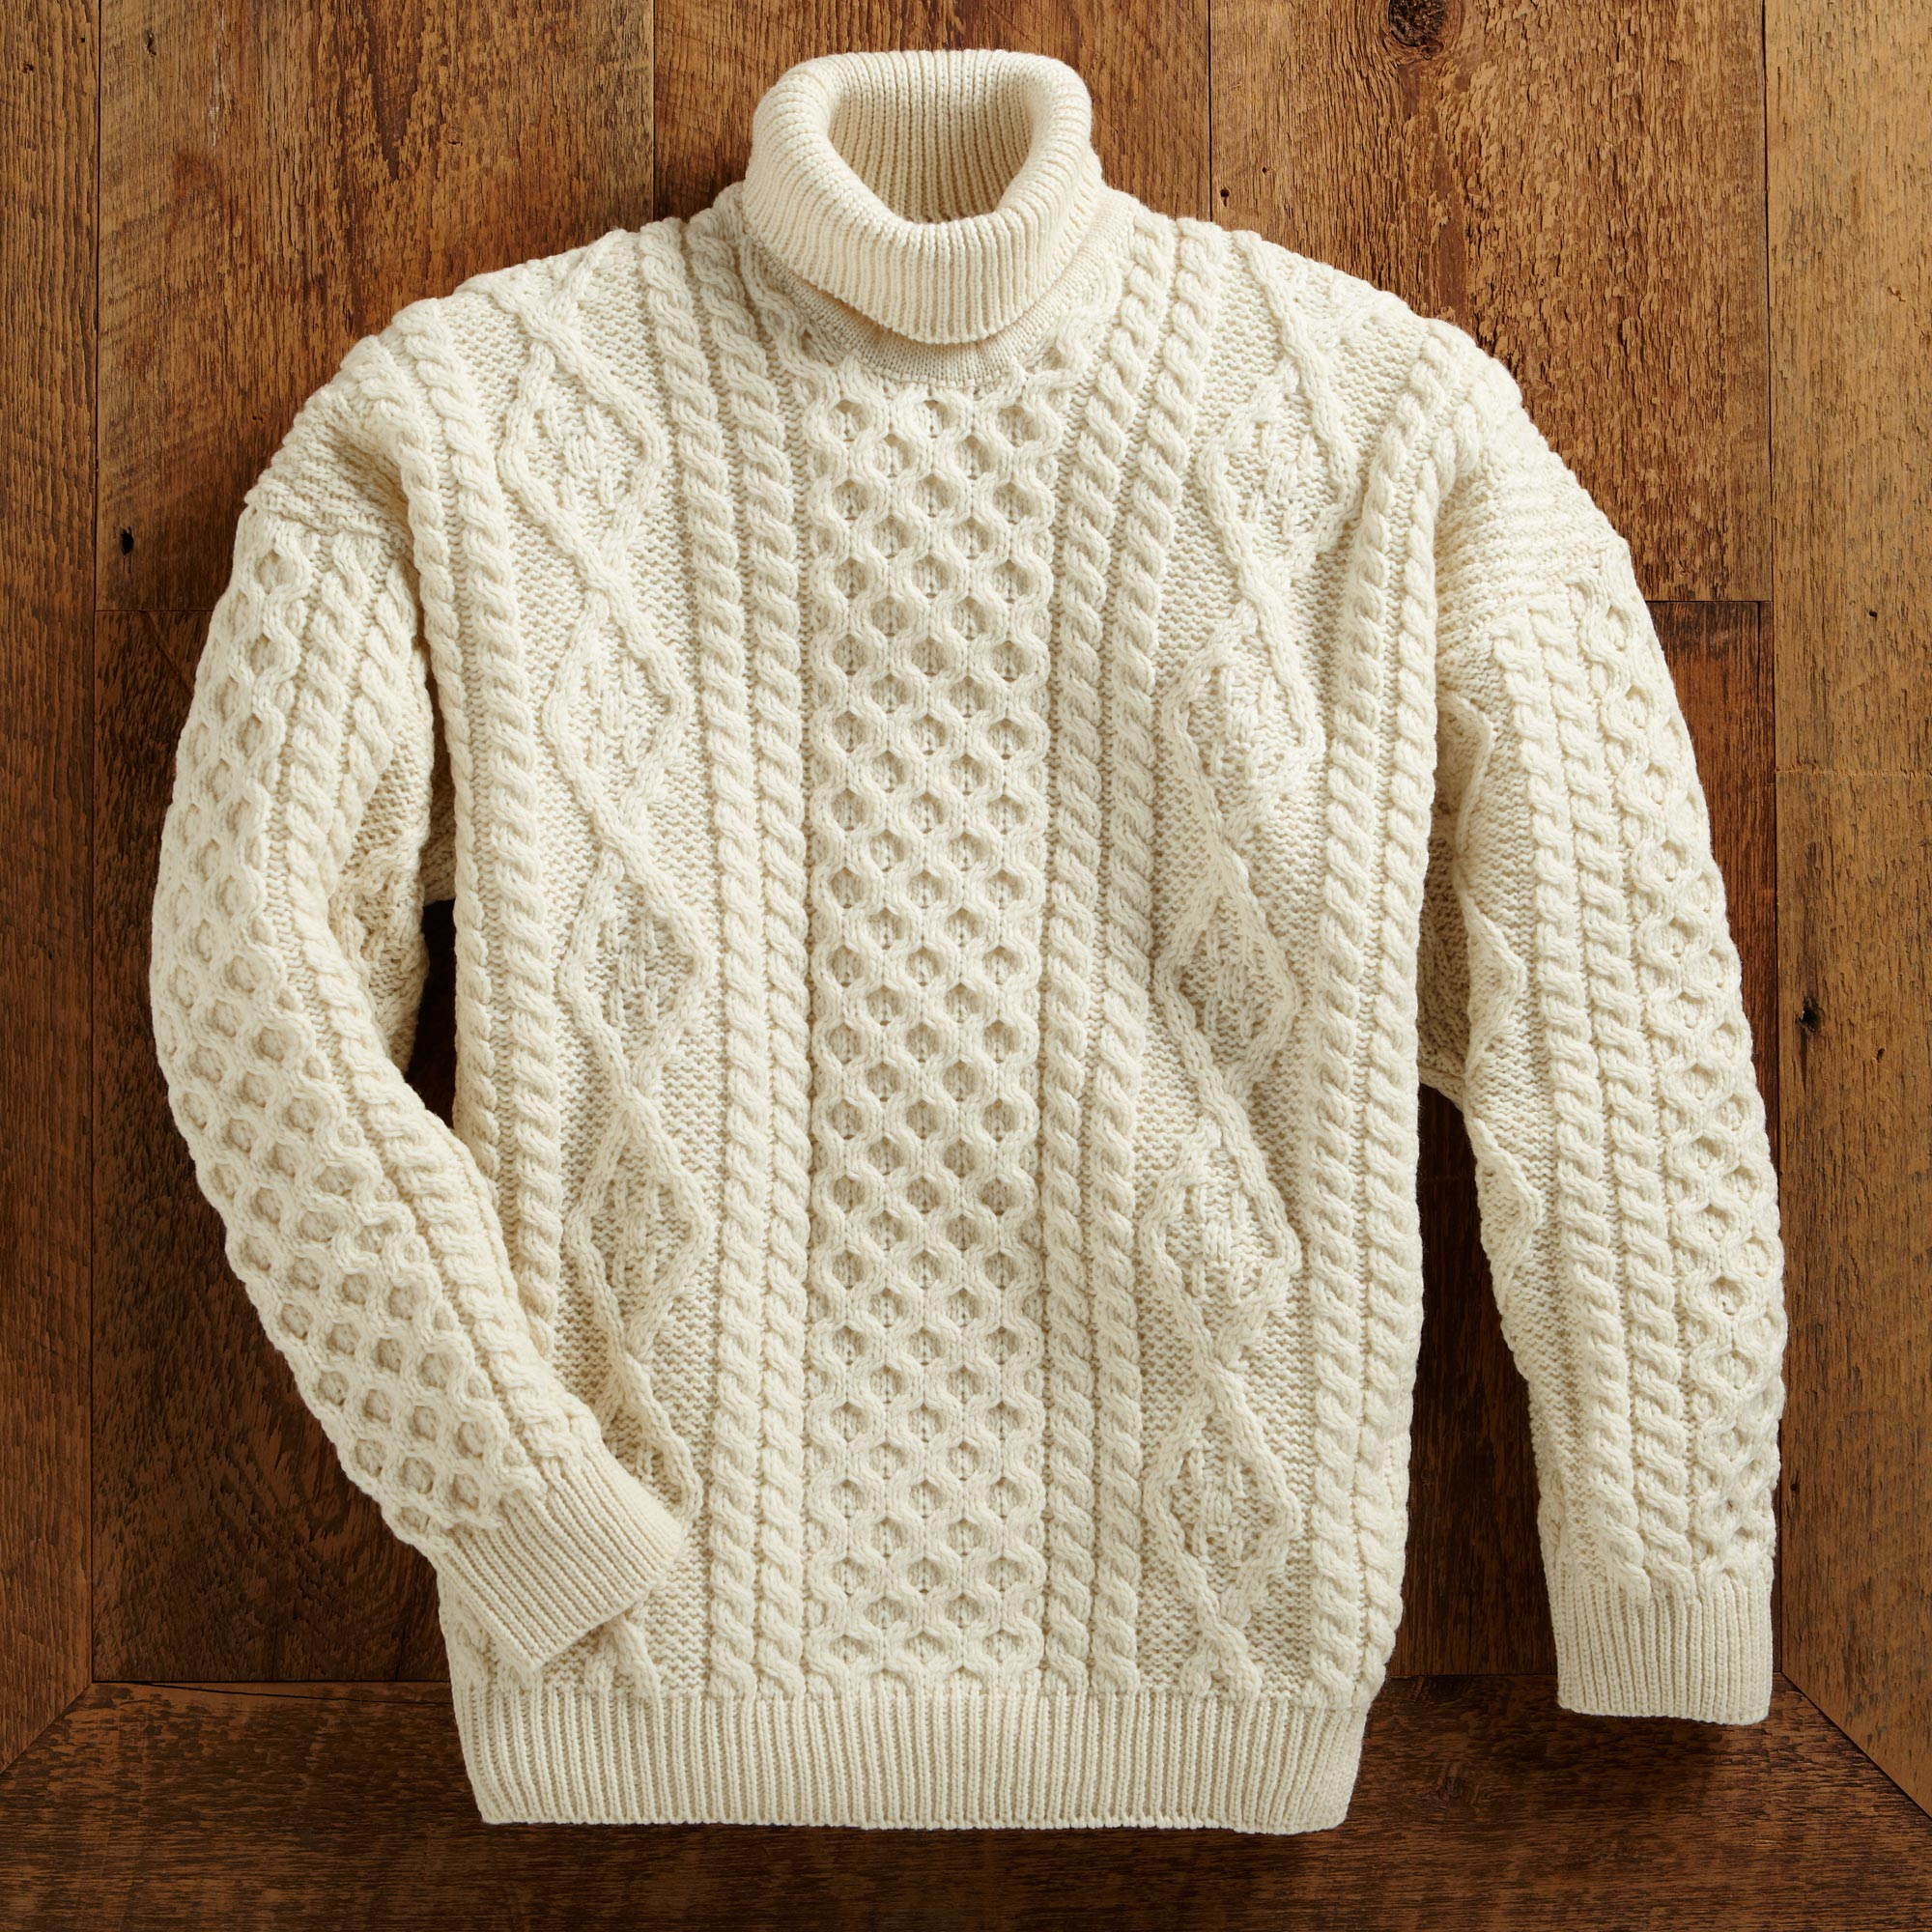 Beige Turtleneck Sweater Mens Online Selection, Save 66% | jlcatj.gob.mx